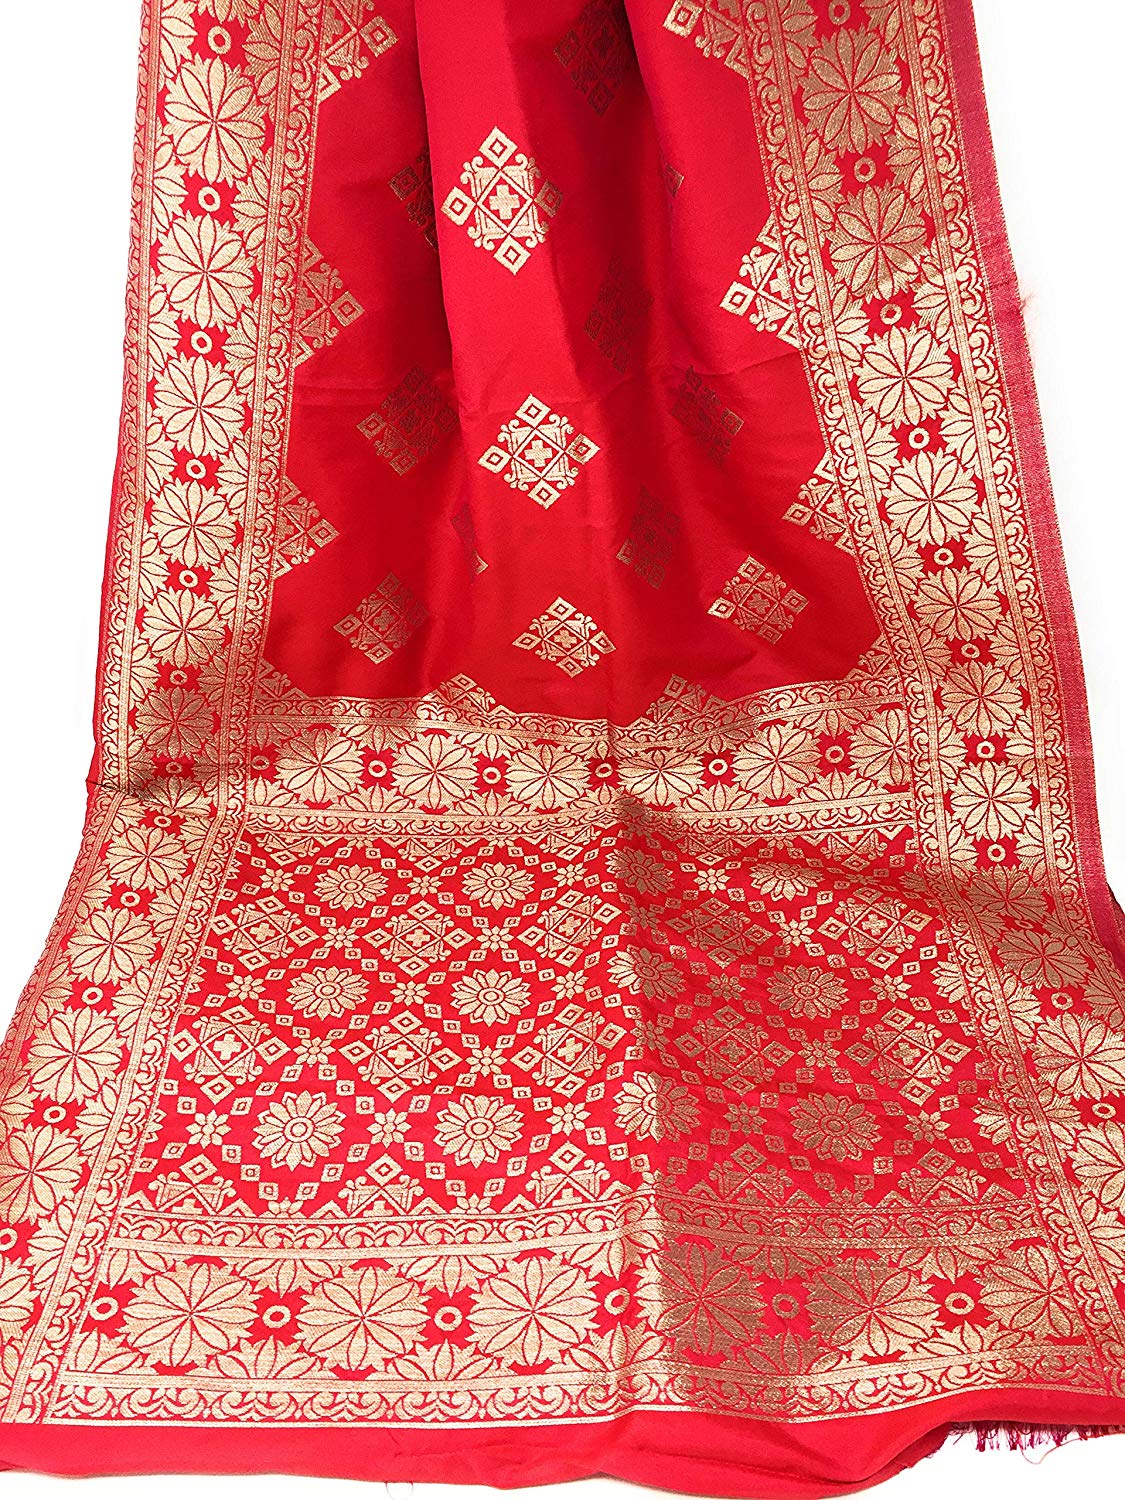 Banarasi Silk Dupatta in Red Pink Gold